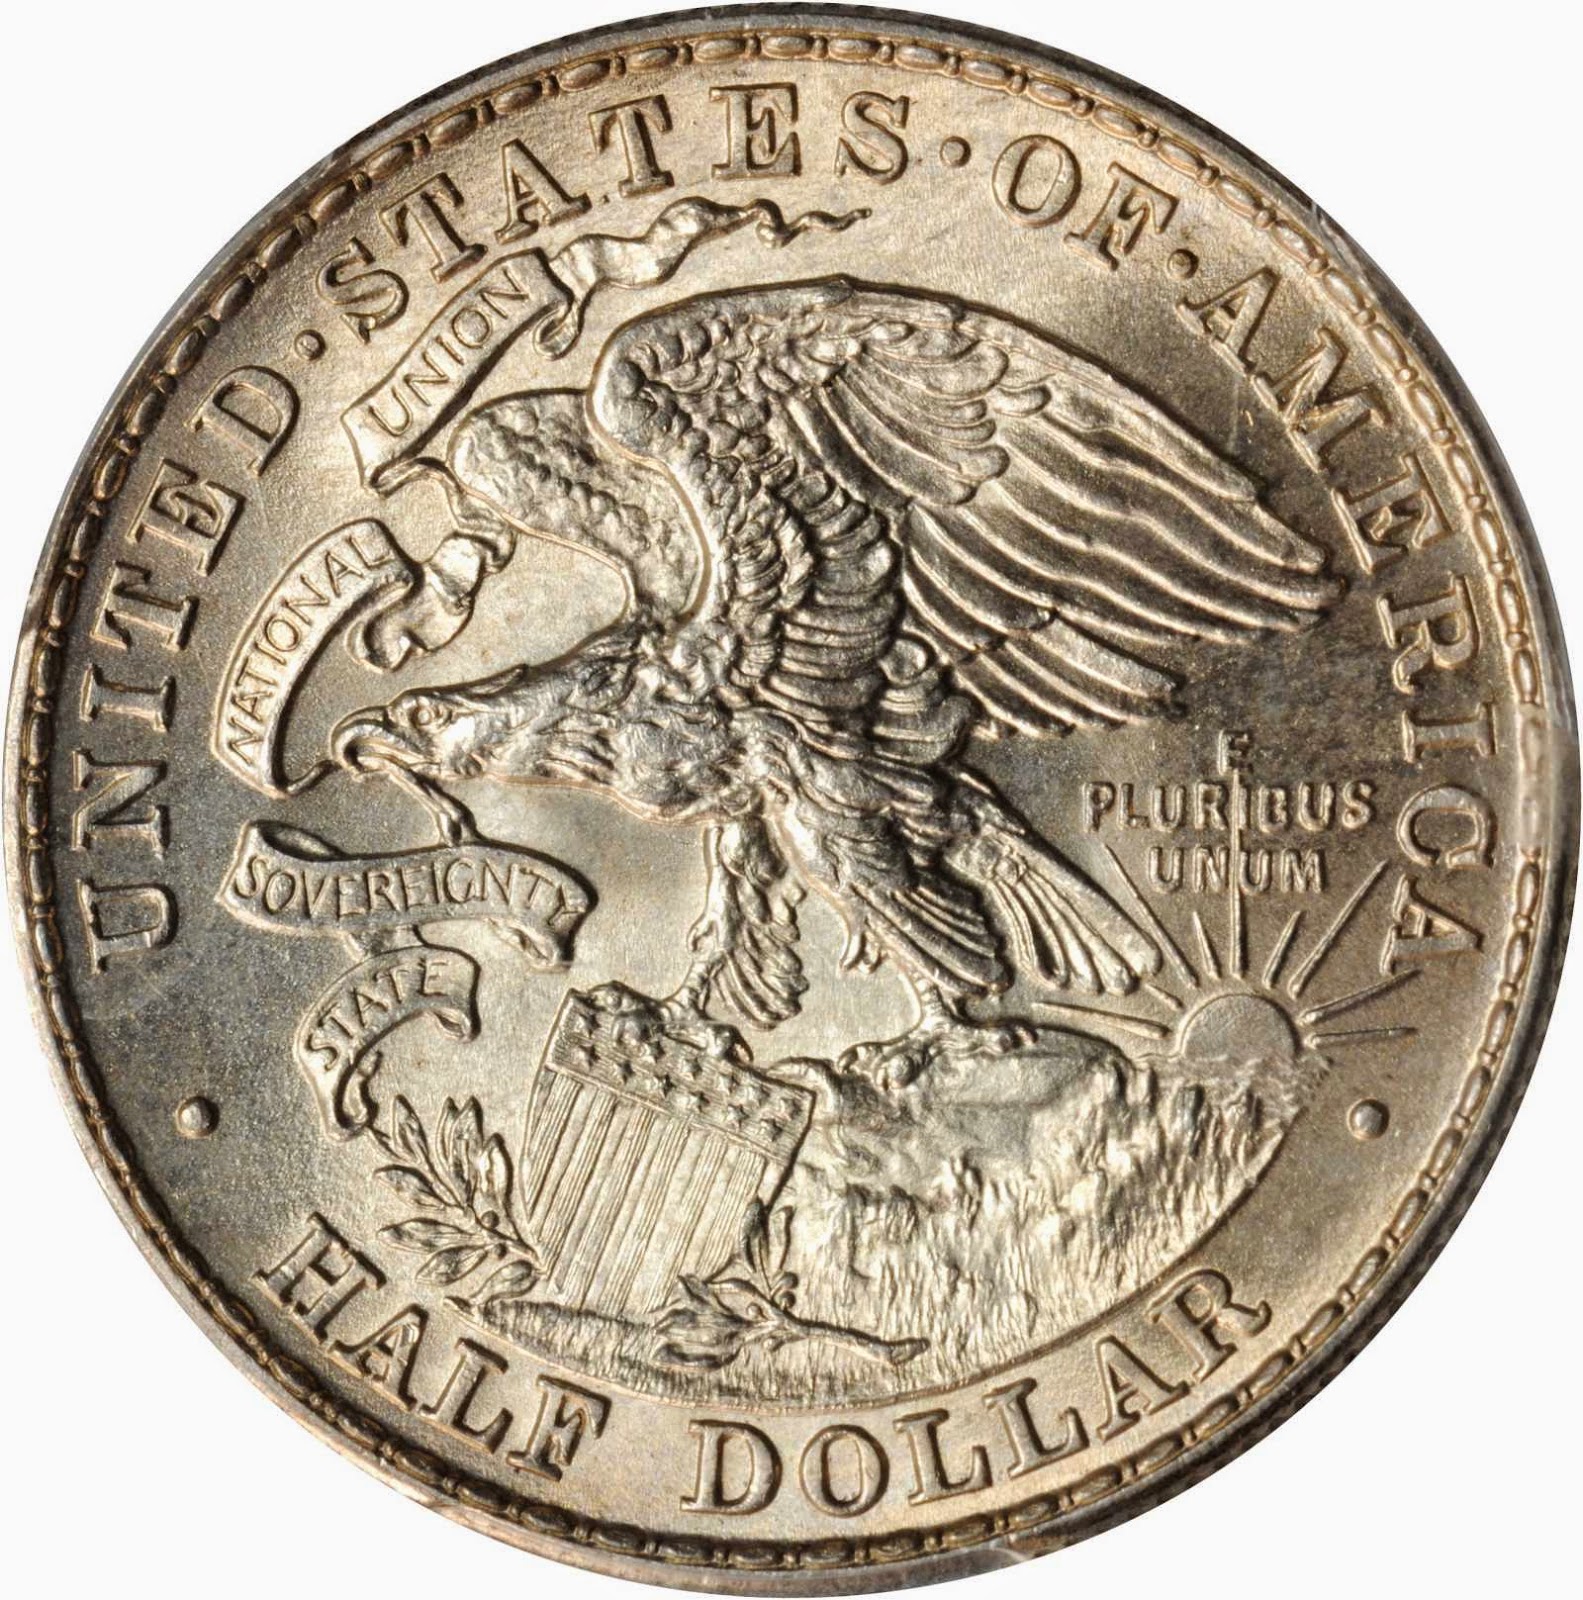 Illinois Centennial Half Dollar